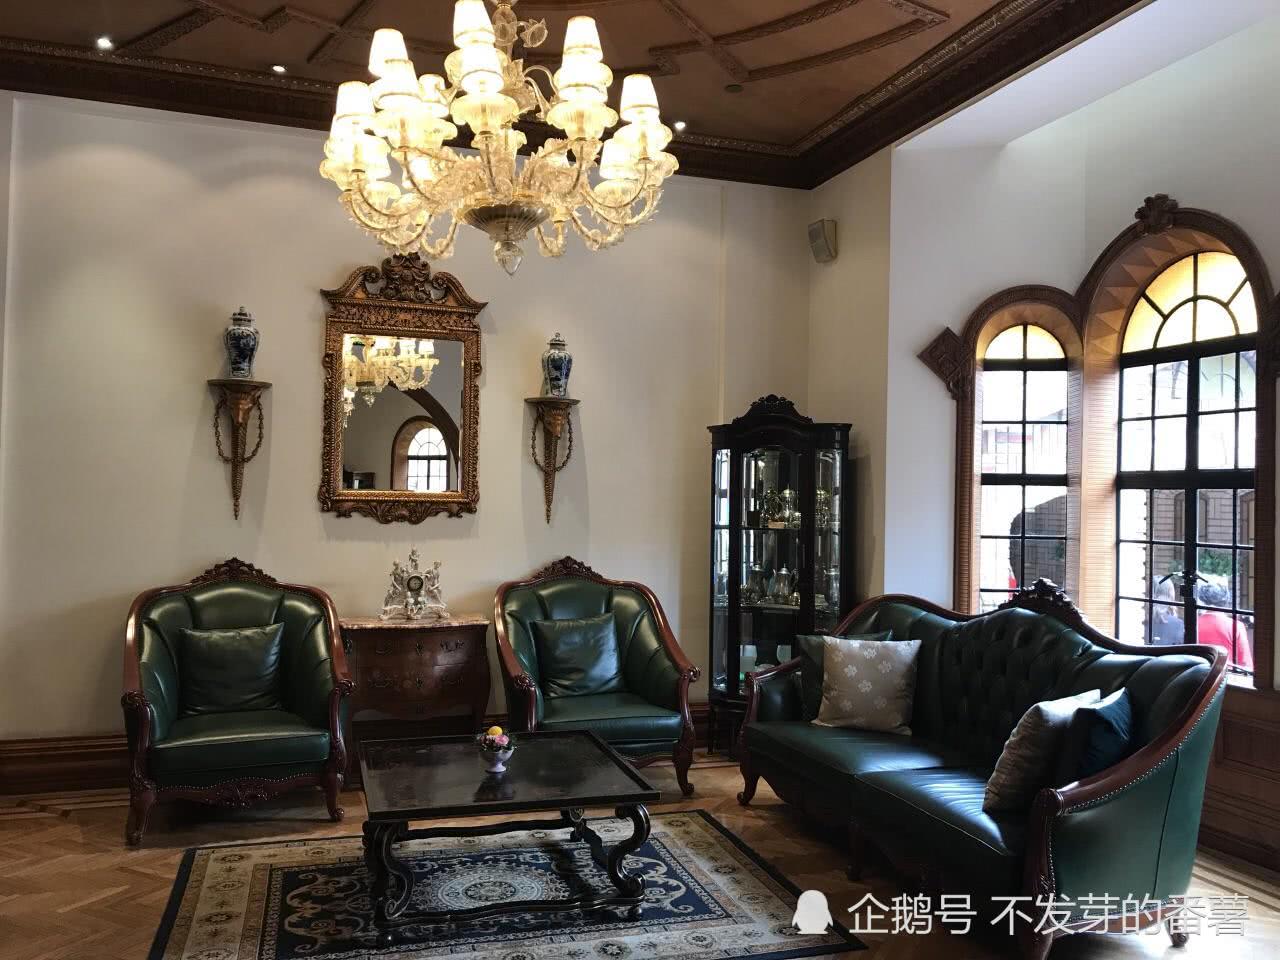 上海马勒别墅的今生前世,顶级老洋房承载着一个传奇故事